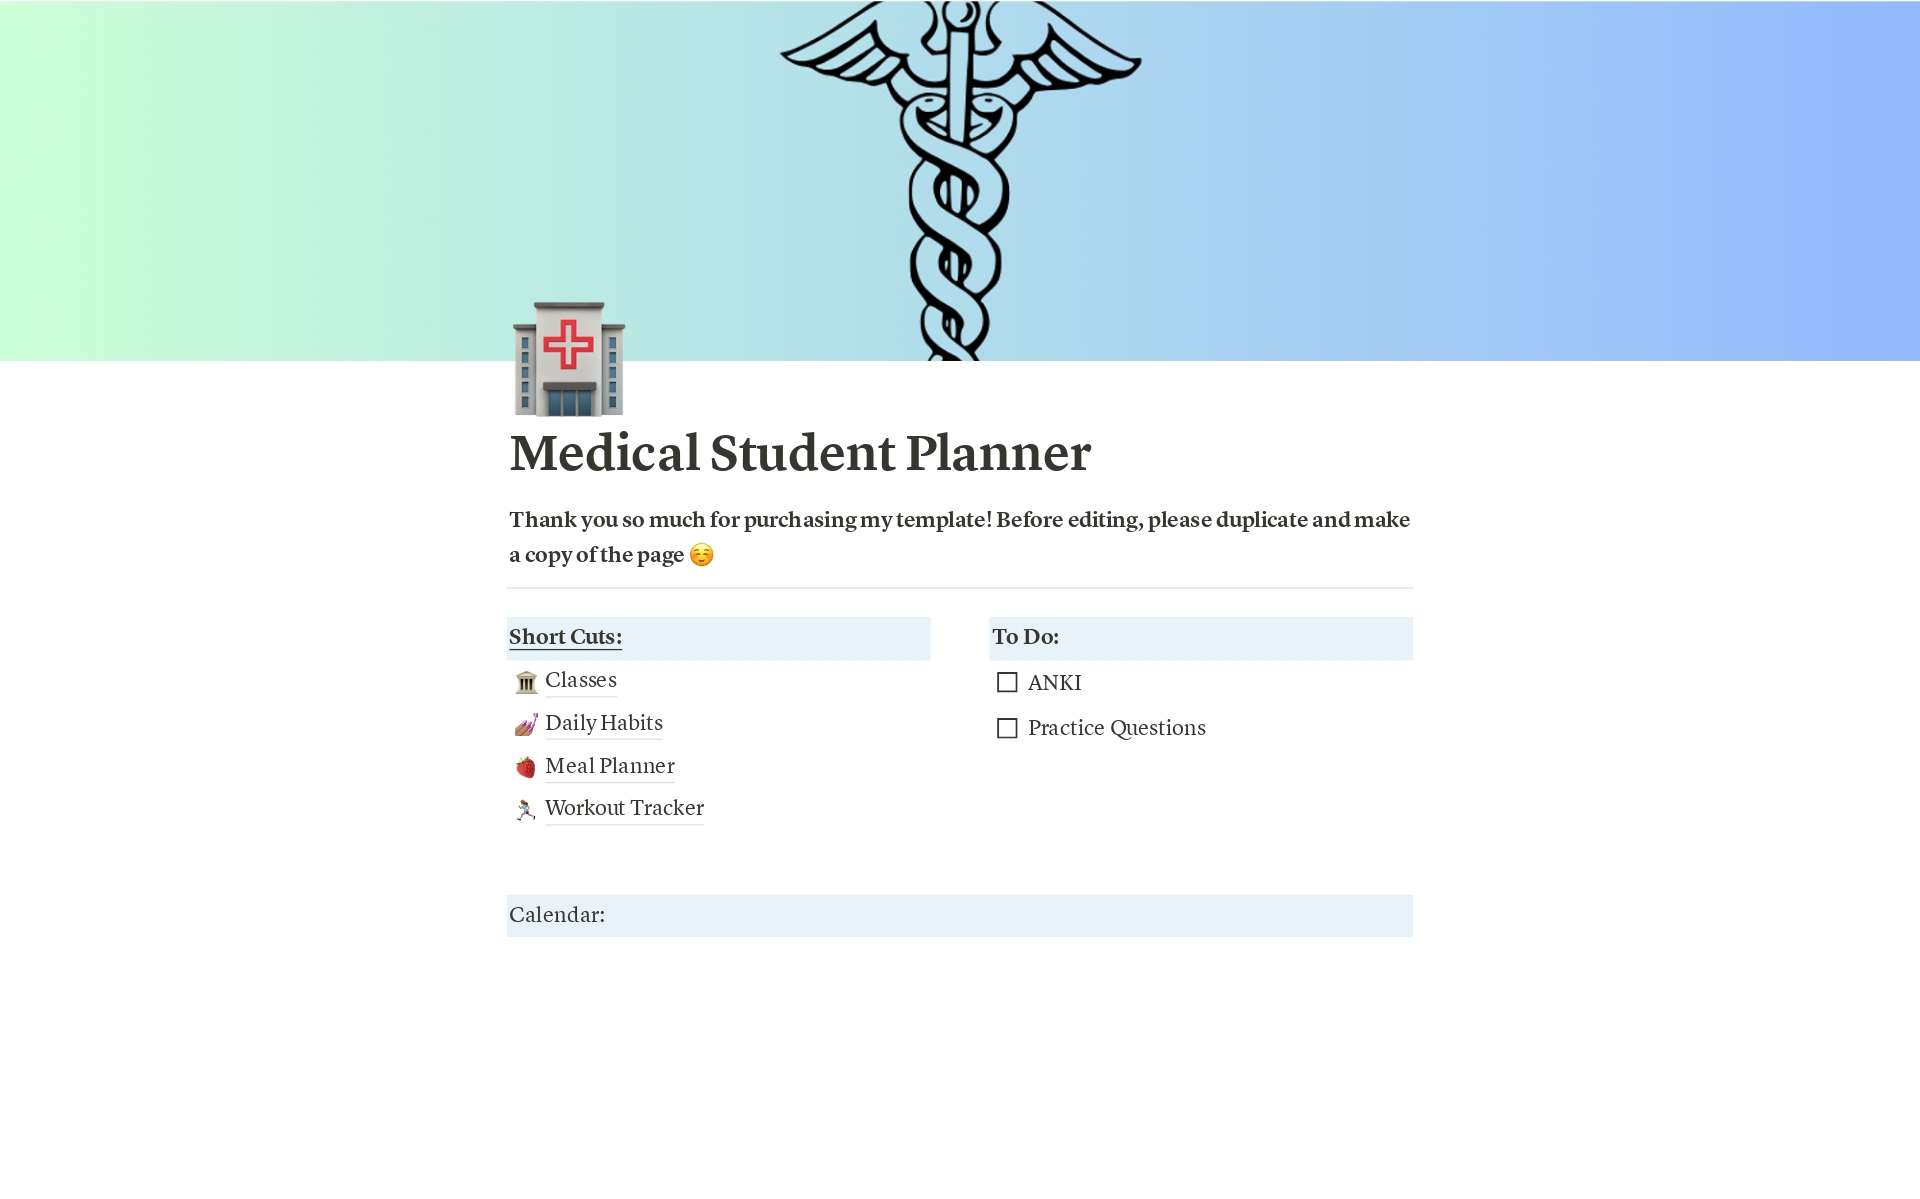 Vista previa de plantilla para Medical Student Planner